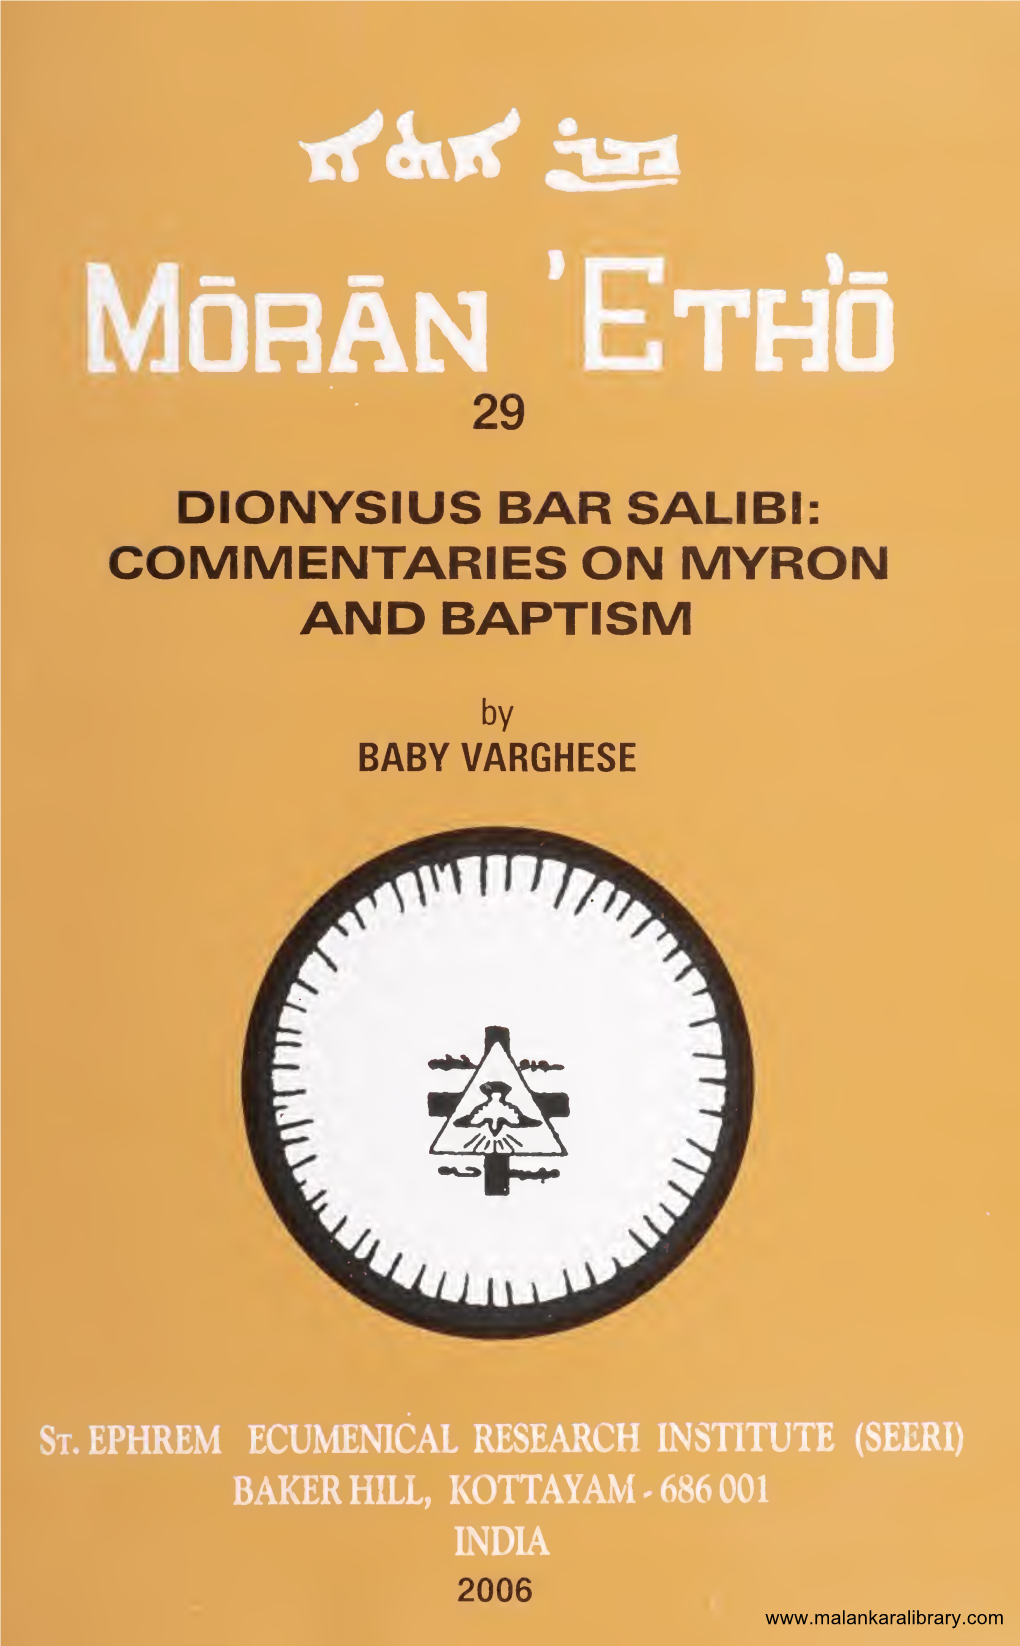 Dionysius Bar Salibi: Commentaries on Myron and Baptism